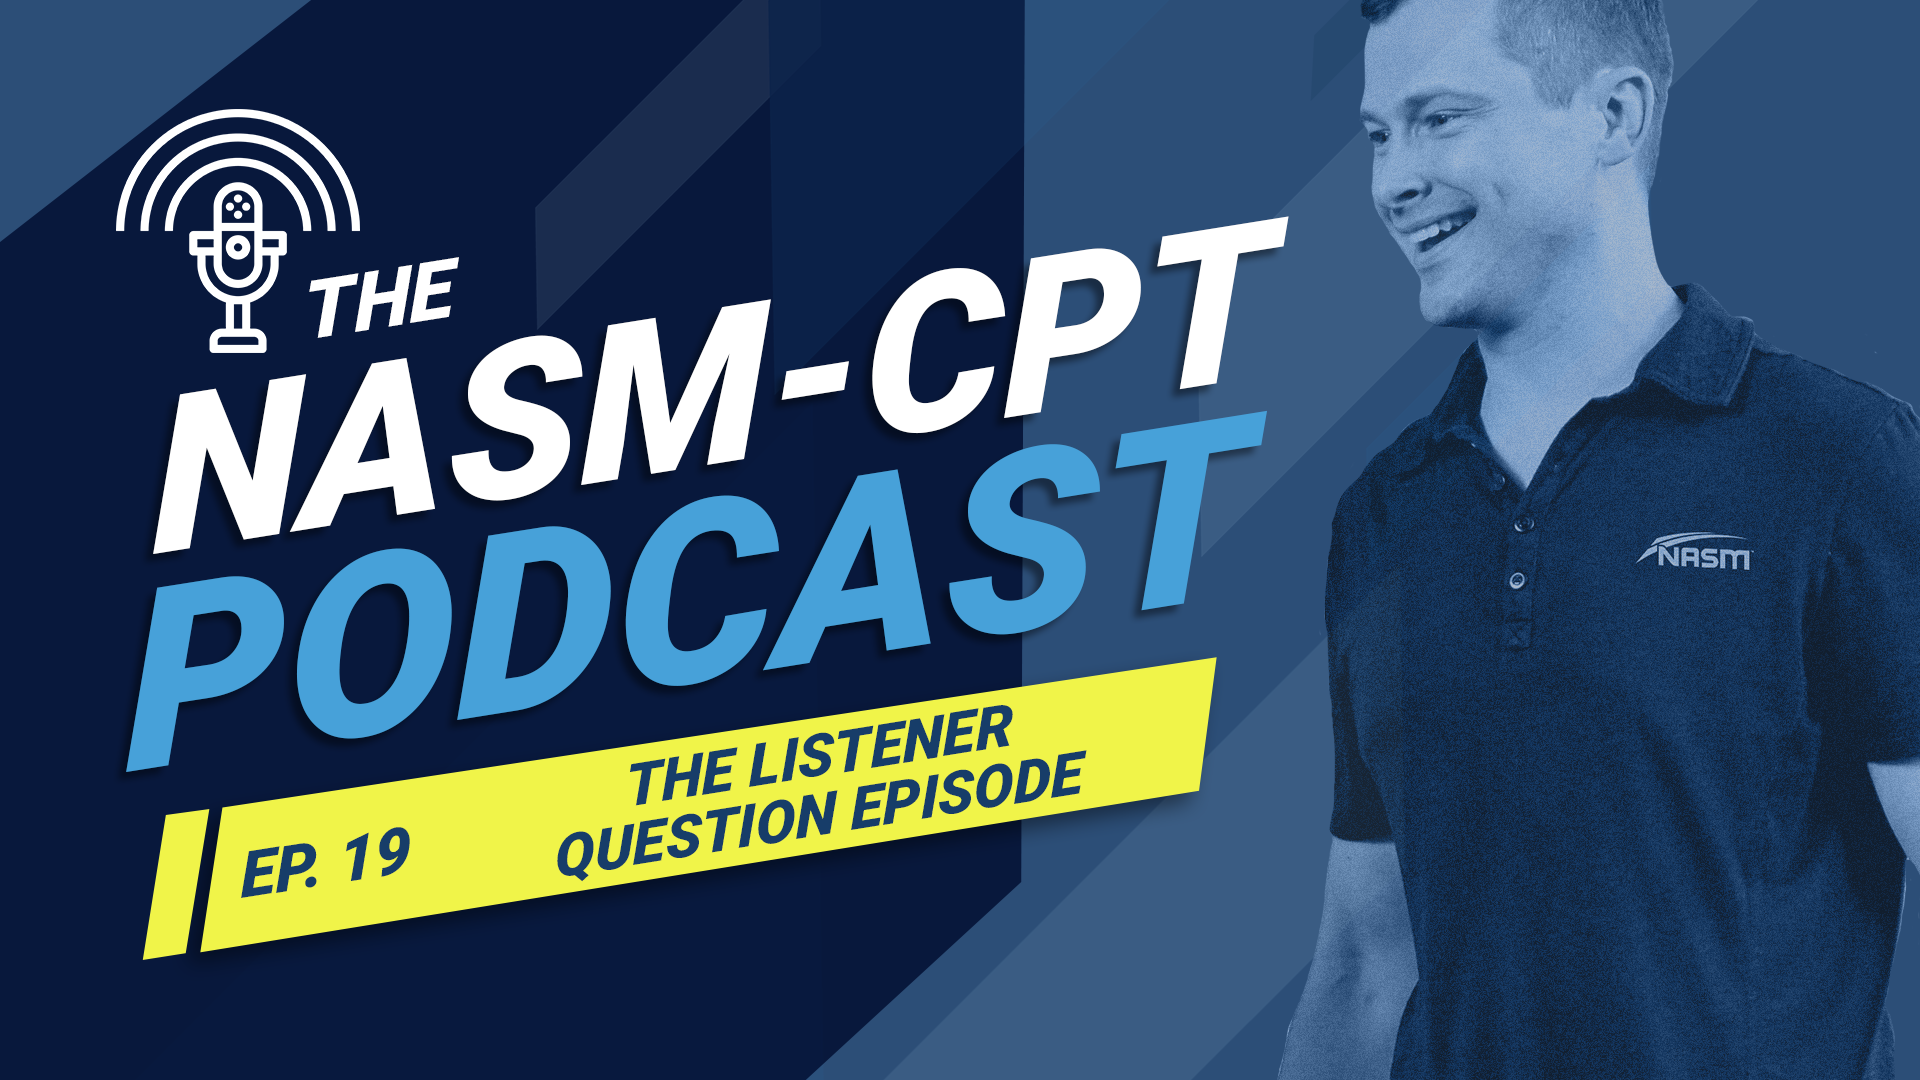 Подкаст NASM-CPT: Эпизод с вопросами слушателя